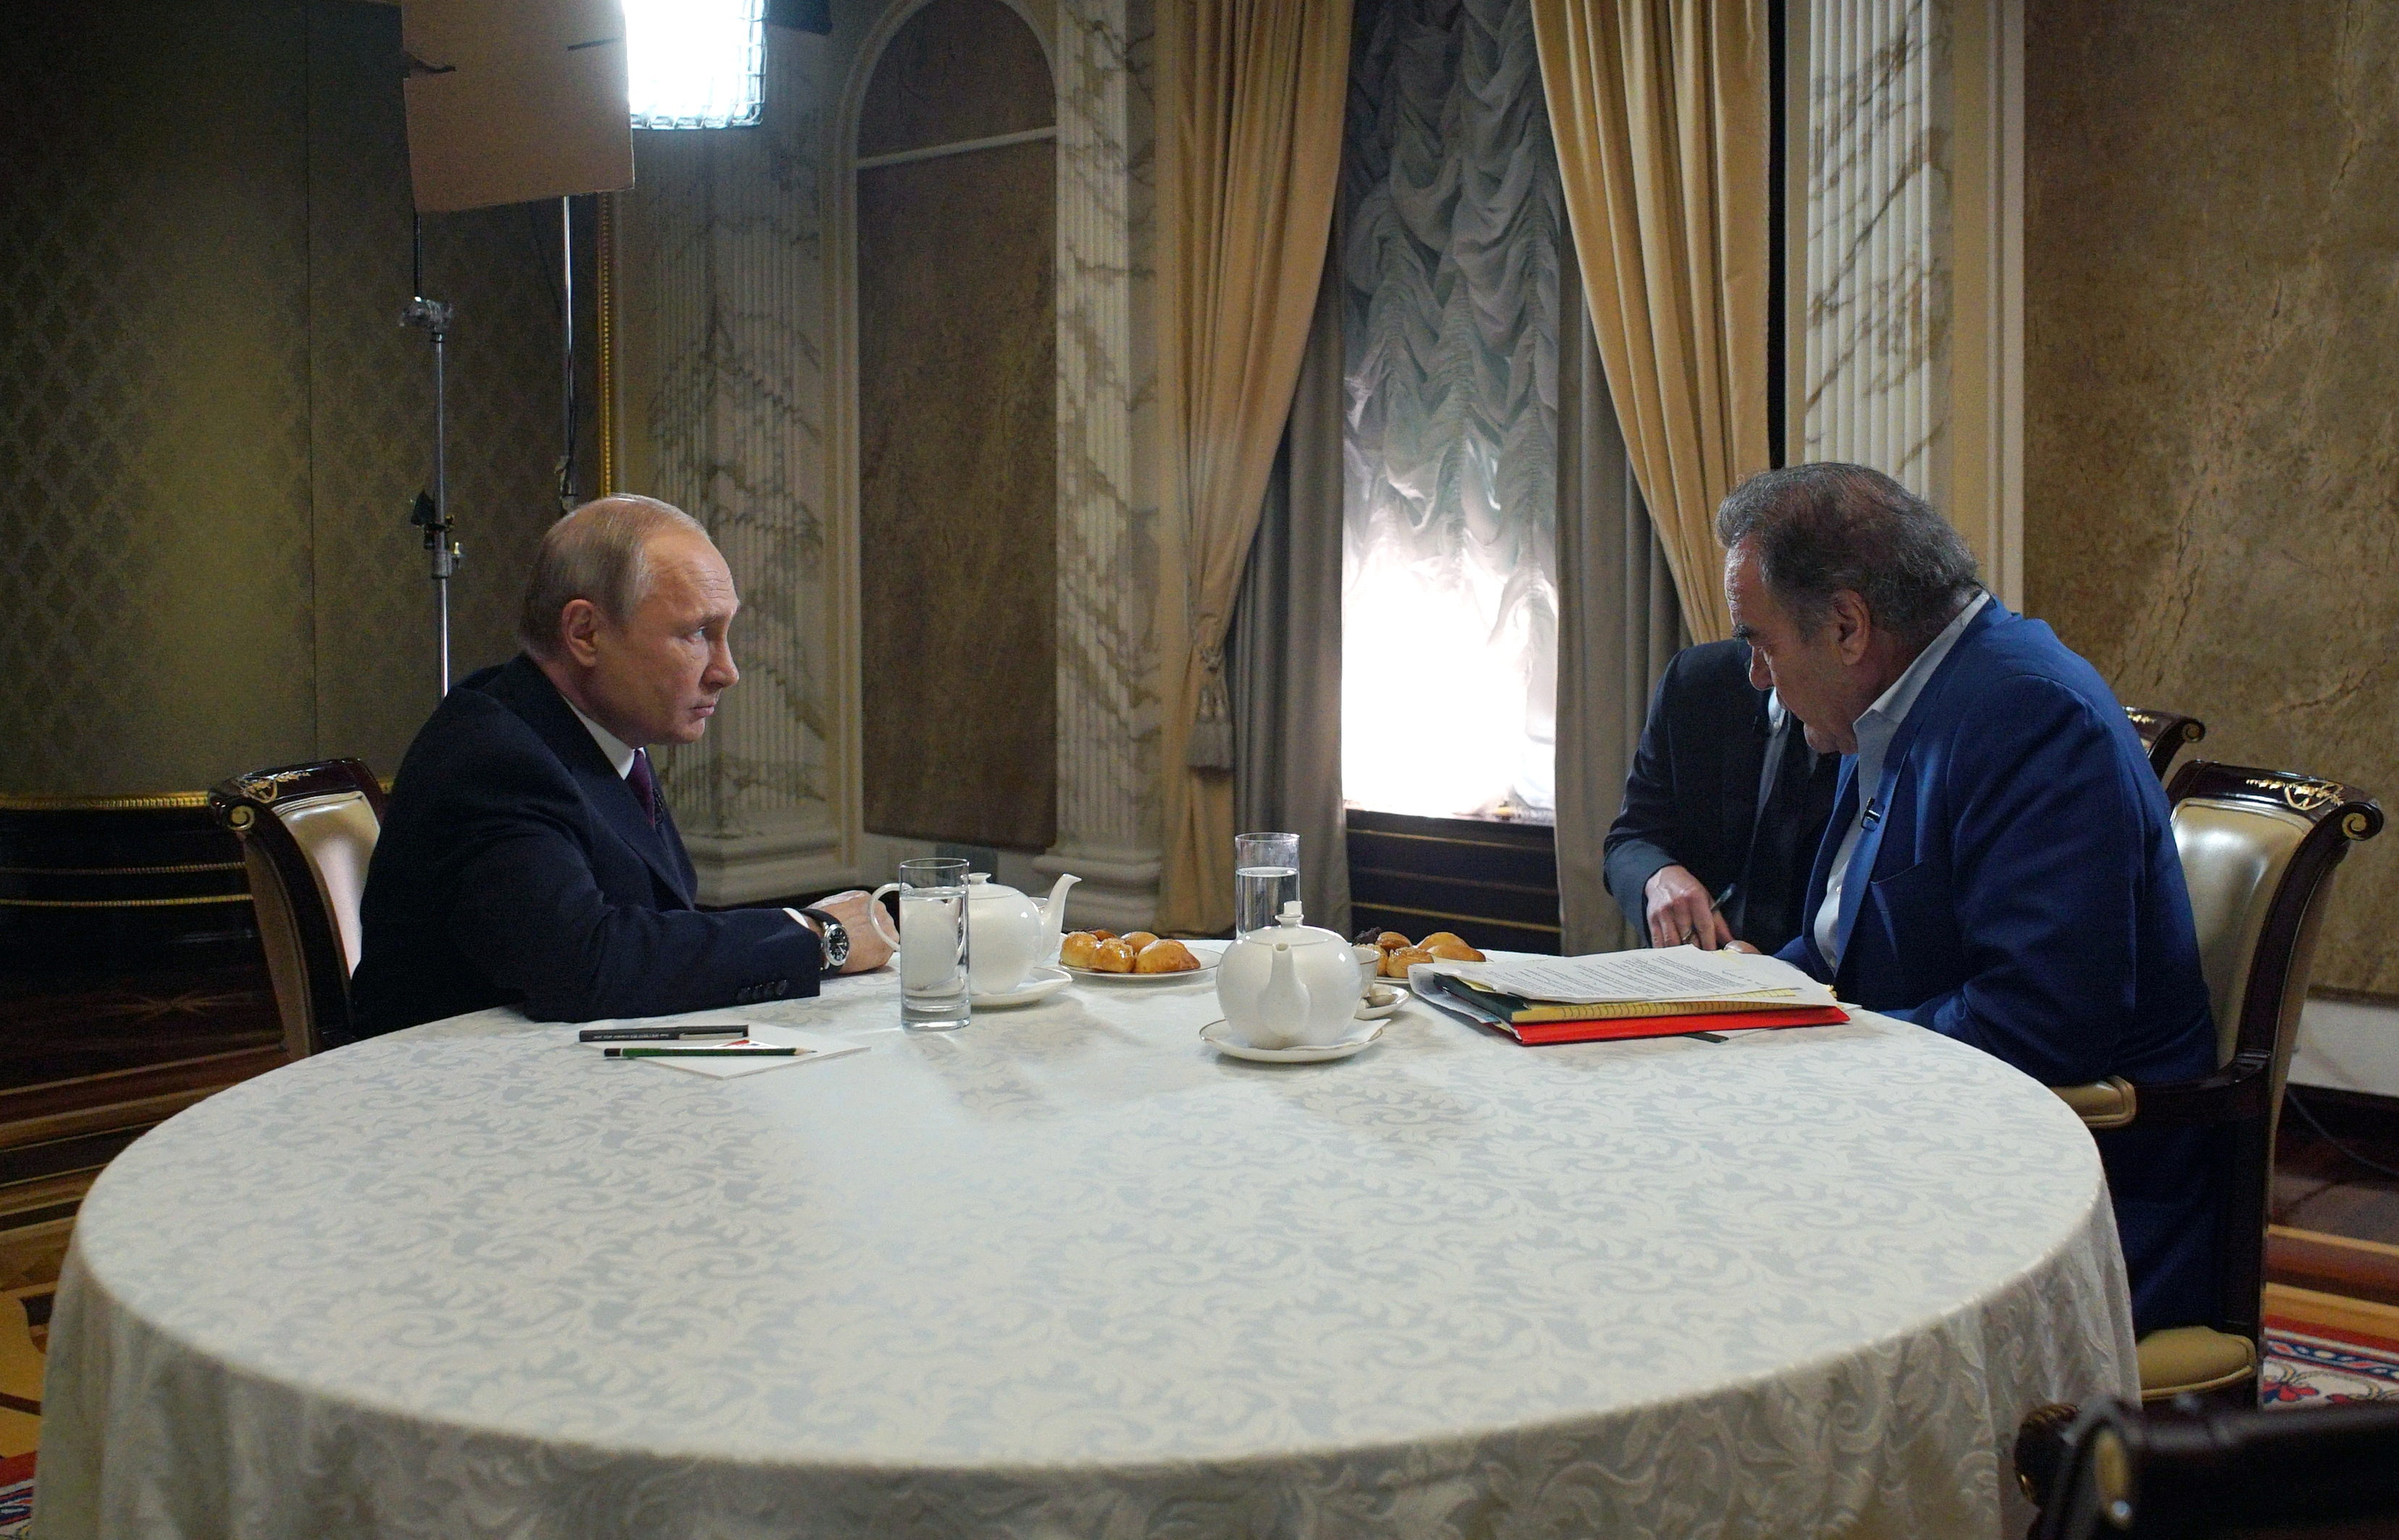 Oliver Stone tuvo un acceso sin precedentes al jefe del Kremlin durante dos años mientras filmaba una serie de entrevistas